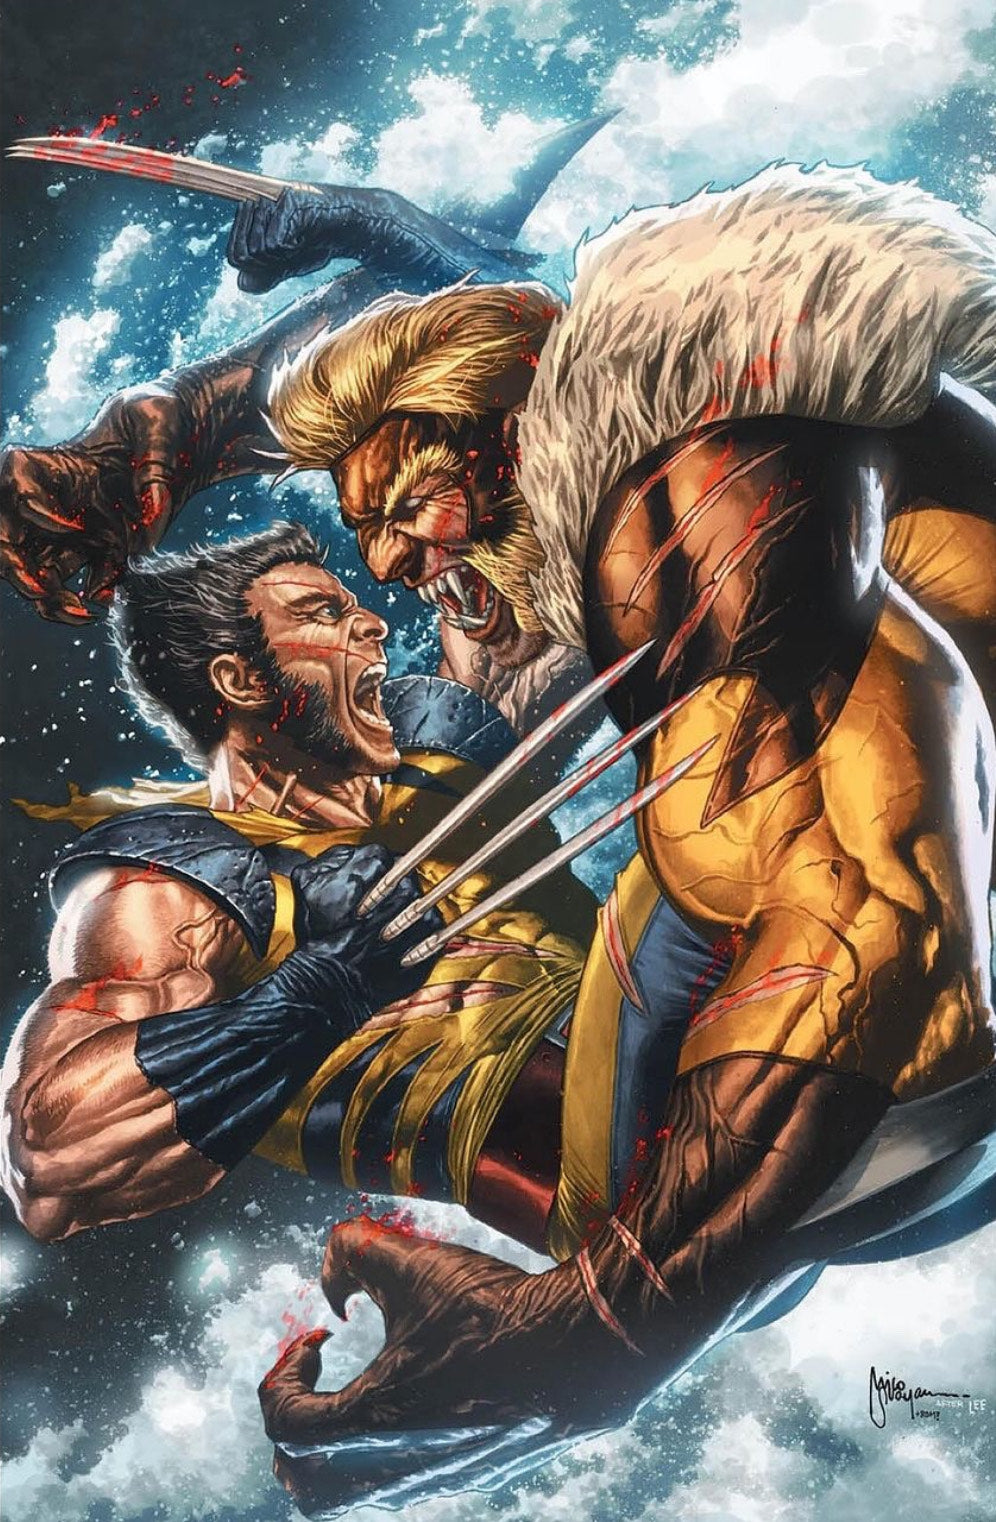 Wolverine #41 (Mico Suayan) Virgin LTD 1000 (Jim Lee Homage)